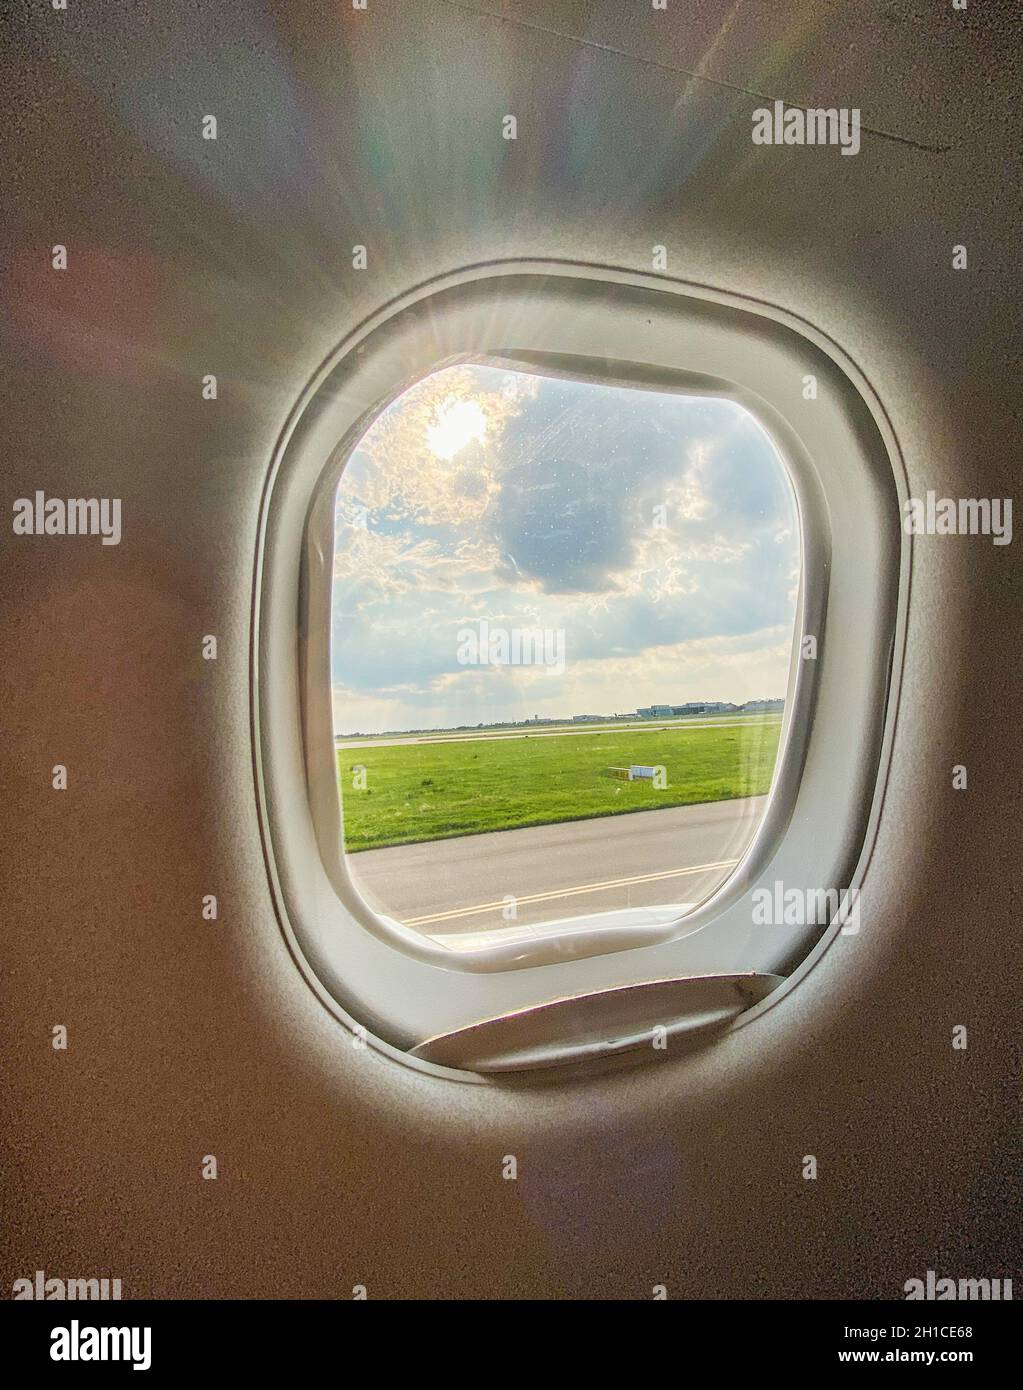 Aéroport de Varsovie Chopin Airfield vu par une fenêtre d'avion avant le décollage ou après l'atterrissage Banque D'Images